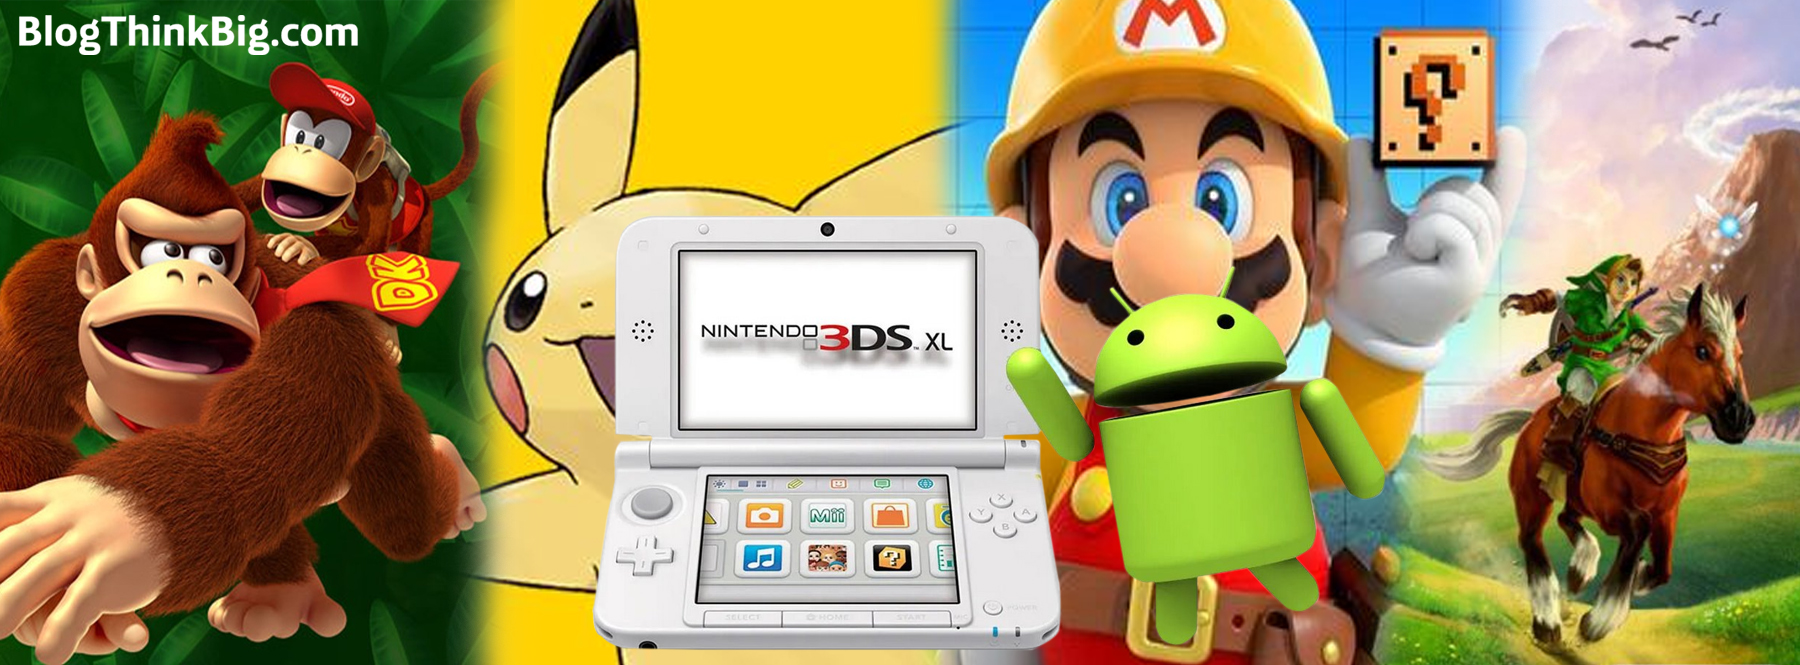 El emulardor de Nintendo 3DS para Android ya disponible